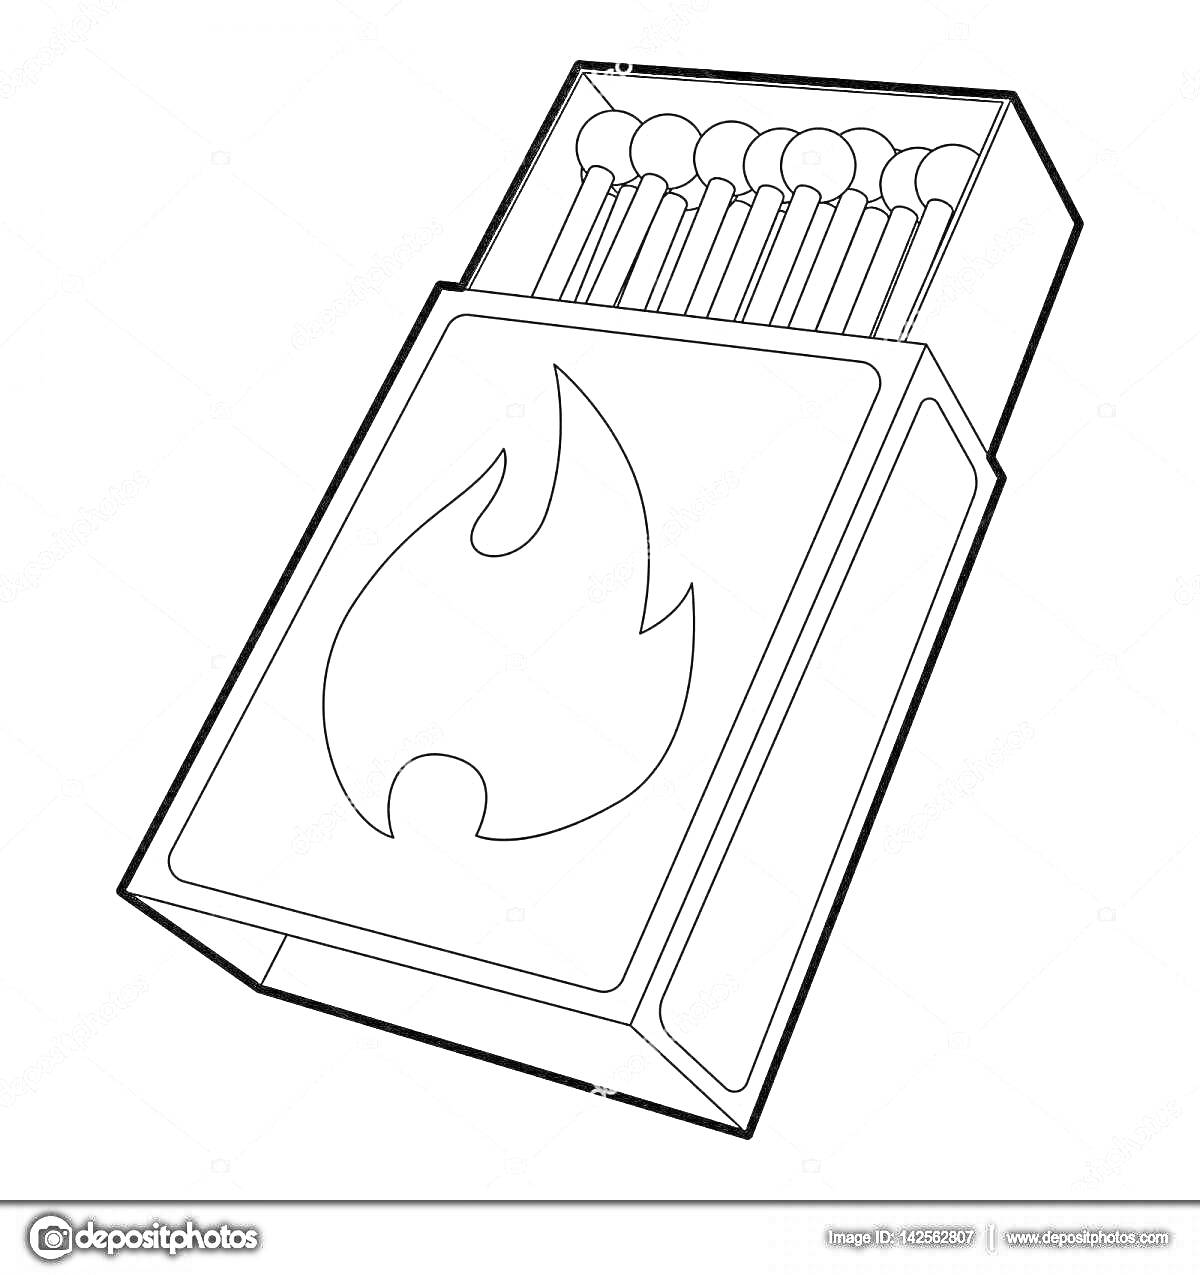 Раскраска спичечный коробок с открытыми спичками и изображением пламени на упаковке